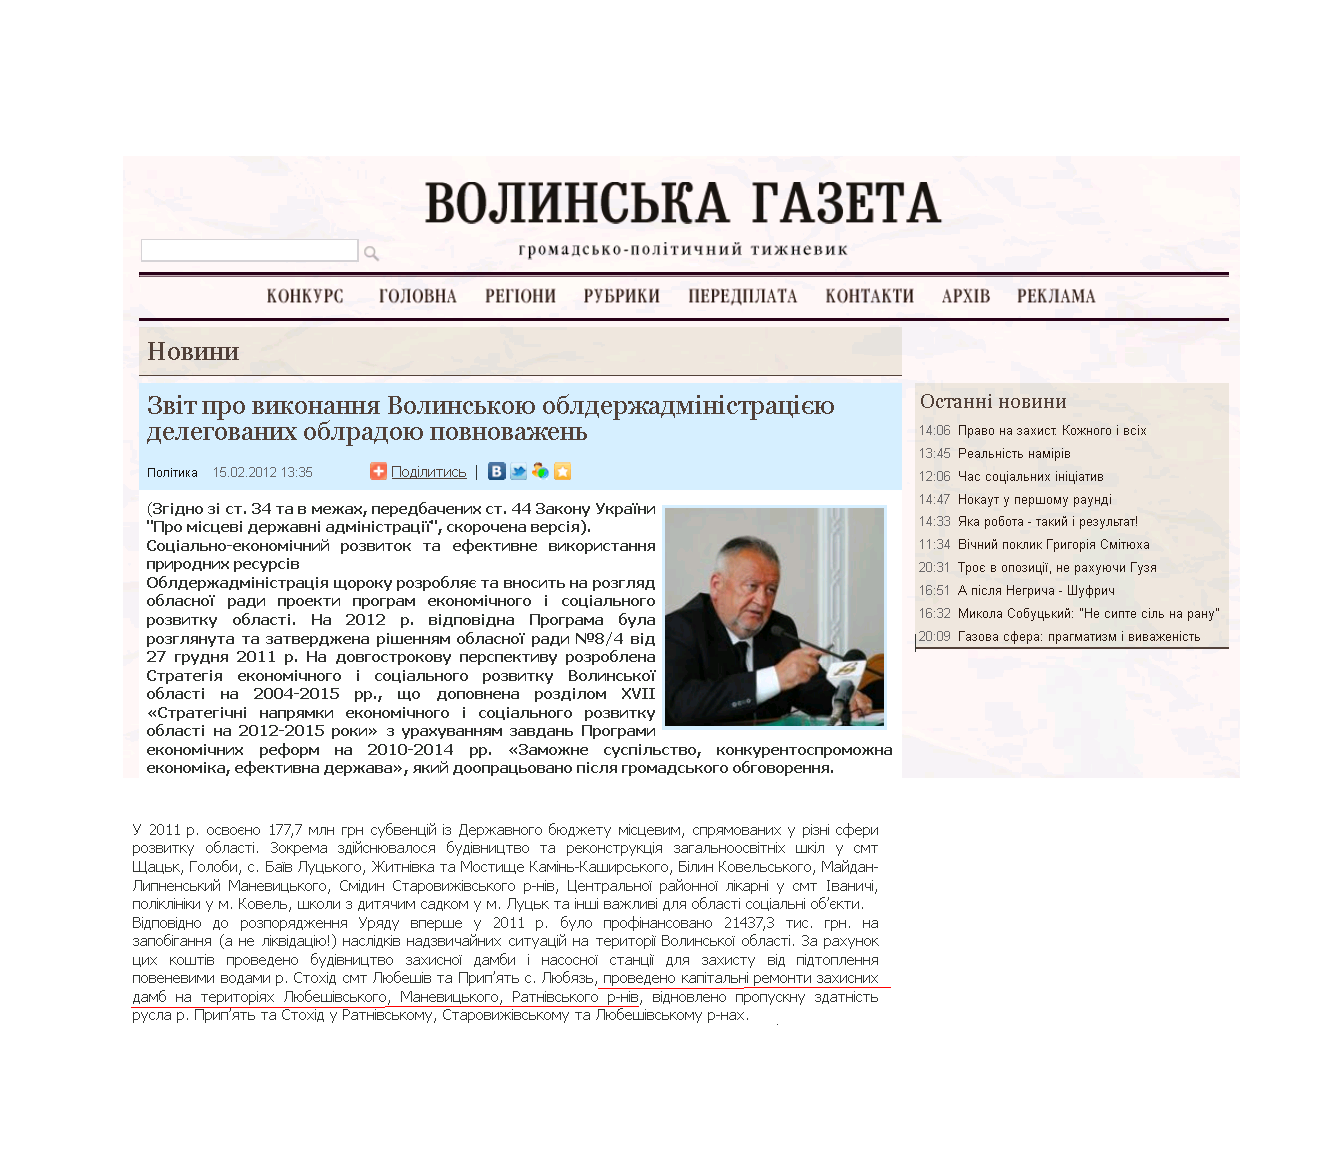 http://volga.lutsk.ua/ukr/rubrics/news/1653/